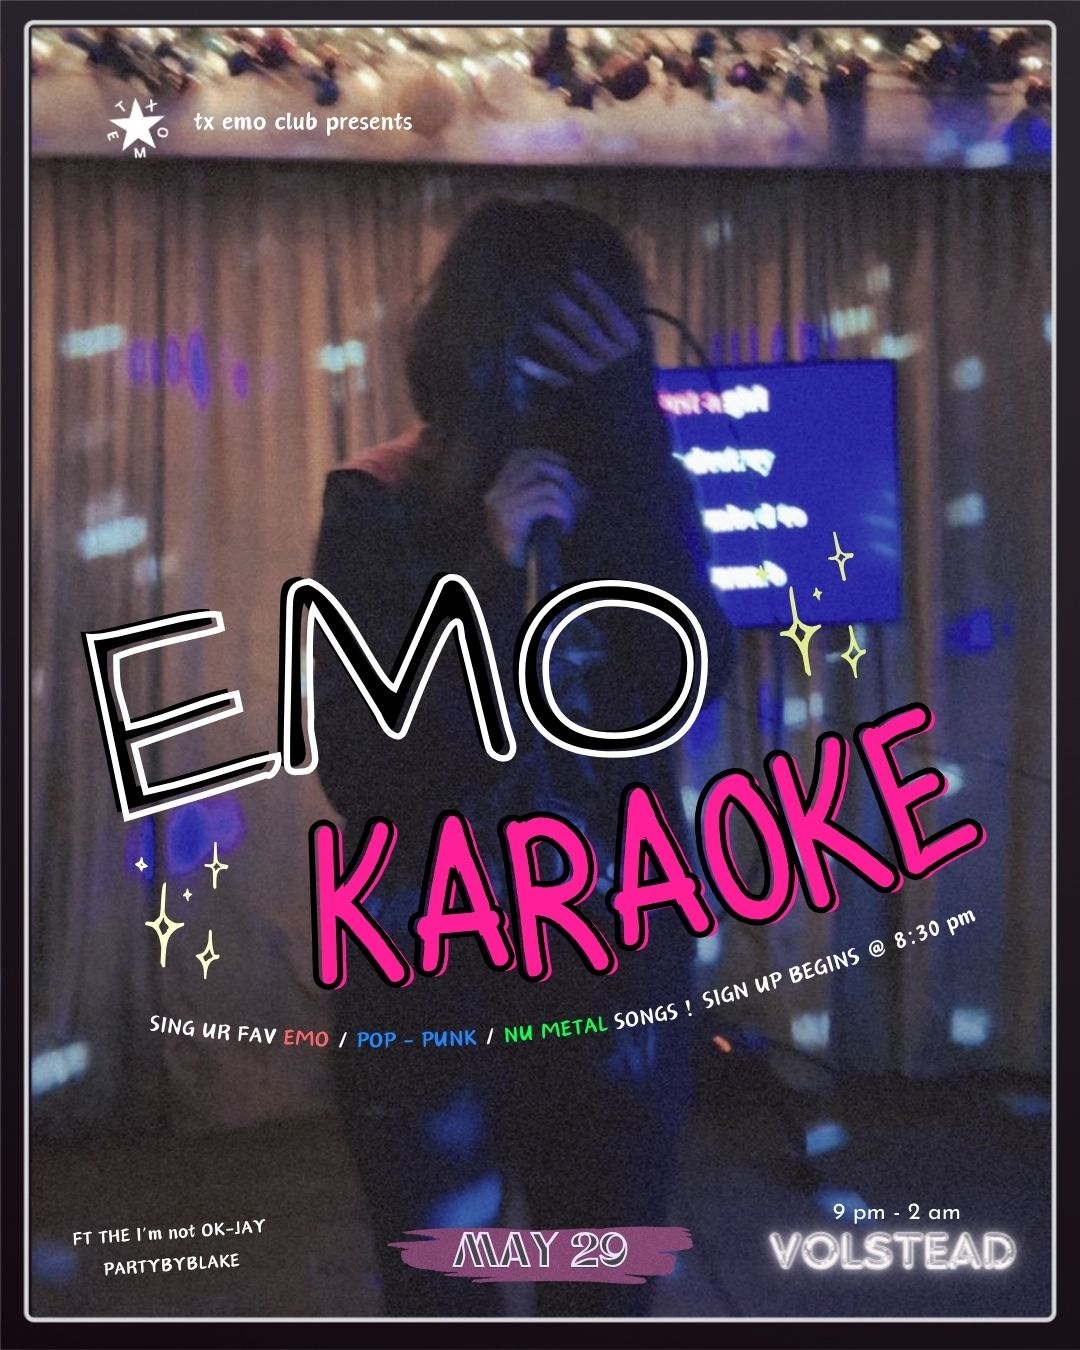 Emo Karaoke - hosted by TX Emo Club @ Volstead Lounge